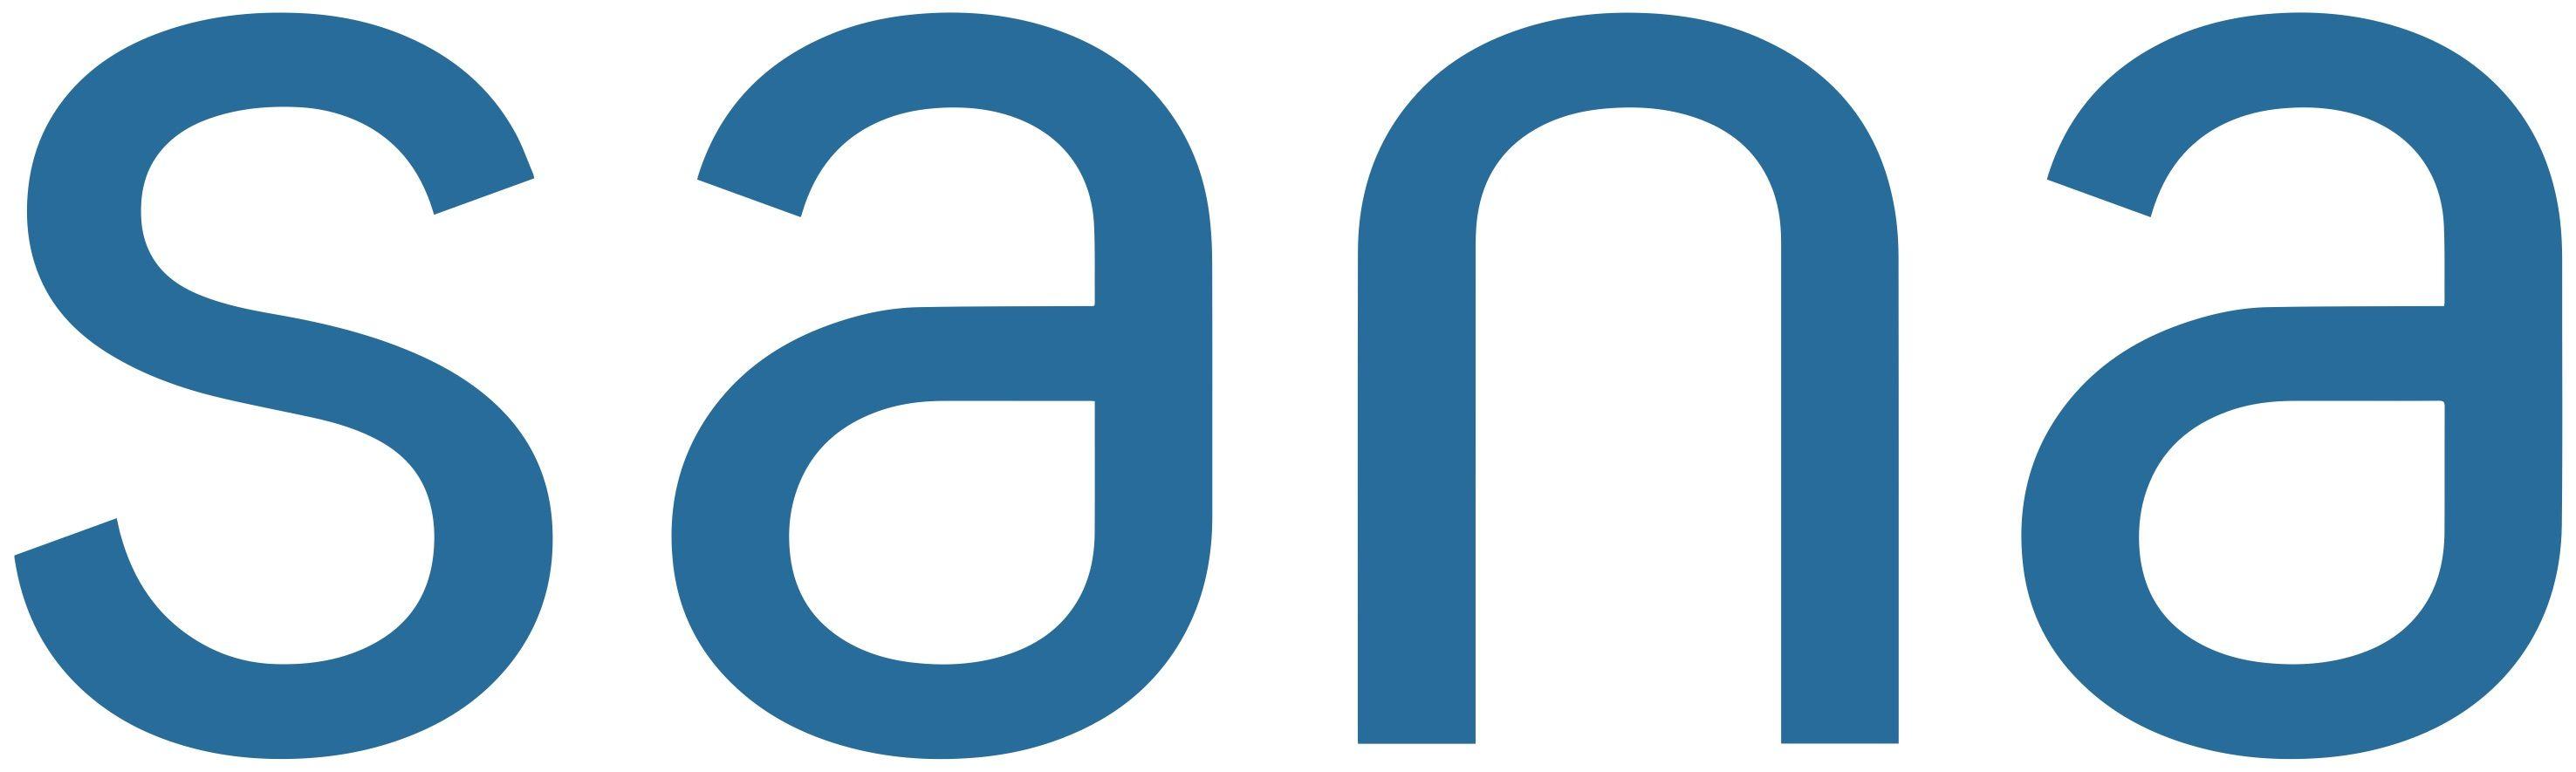 Sana Logo - Sana Health - TMC Innovation